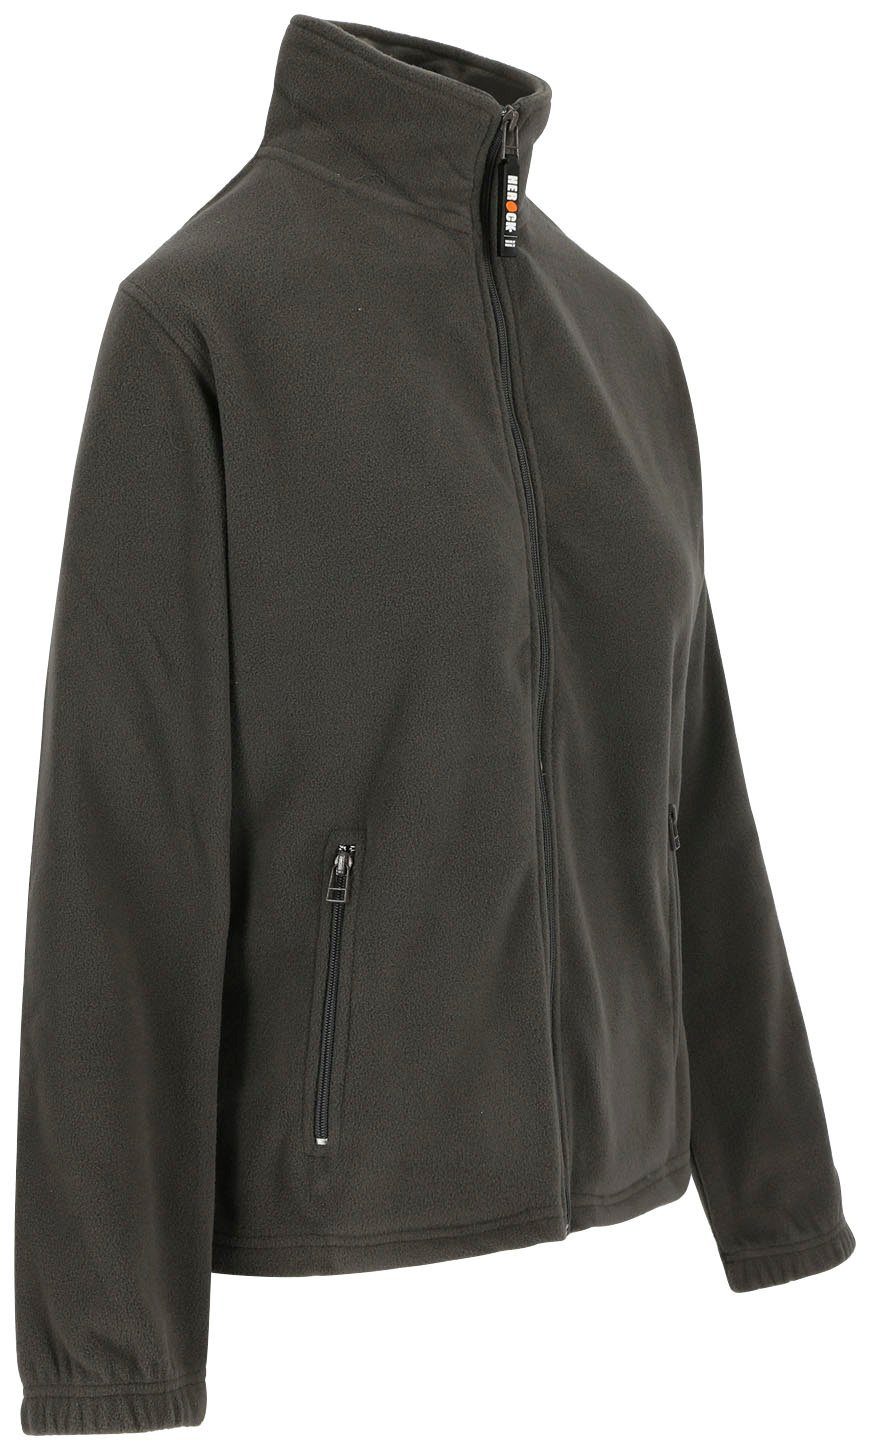 angenehm Damen Herock 2 langem grau Jacke Deva Seitentaschen, und Reißverschluss, warm, Fleece Fleecejacke Mit leicht